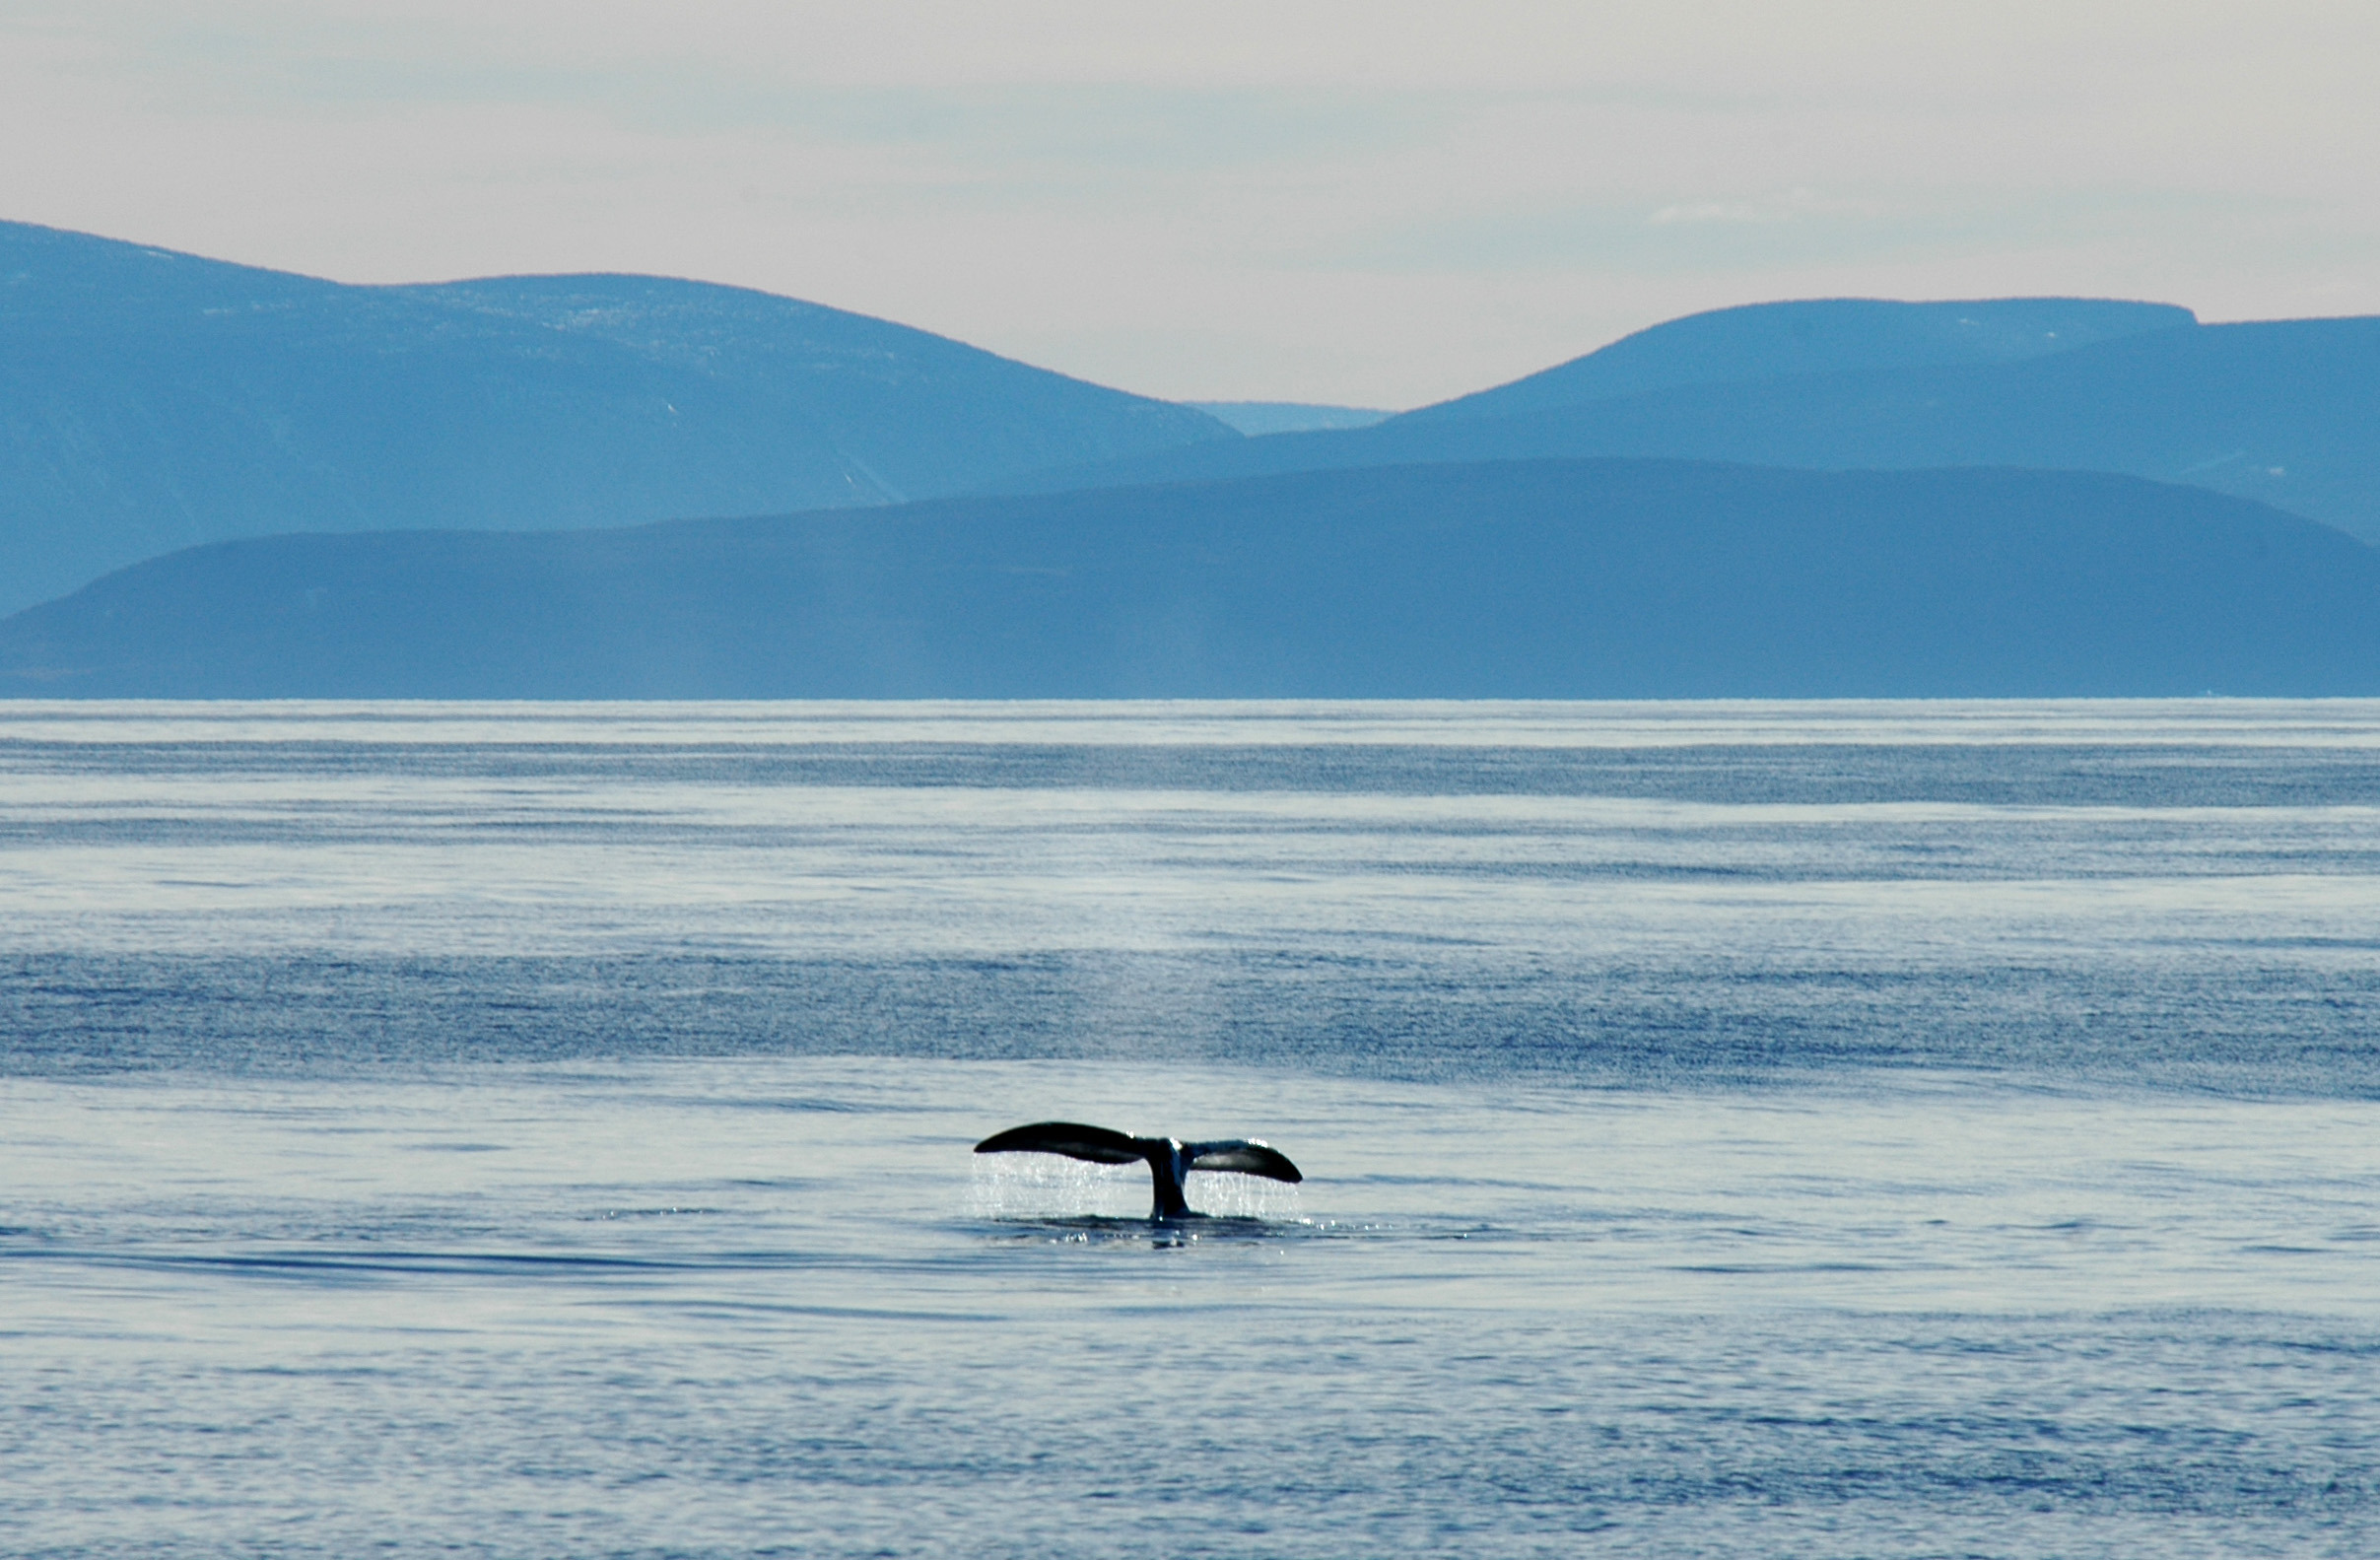 Baleine boréale, Baie Isabelle, Nunavut, Canada